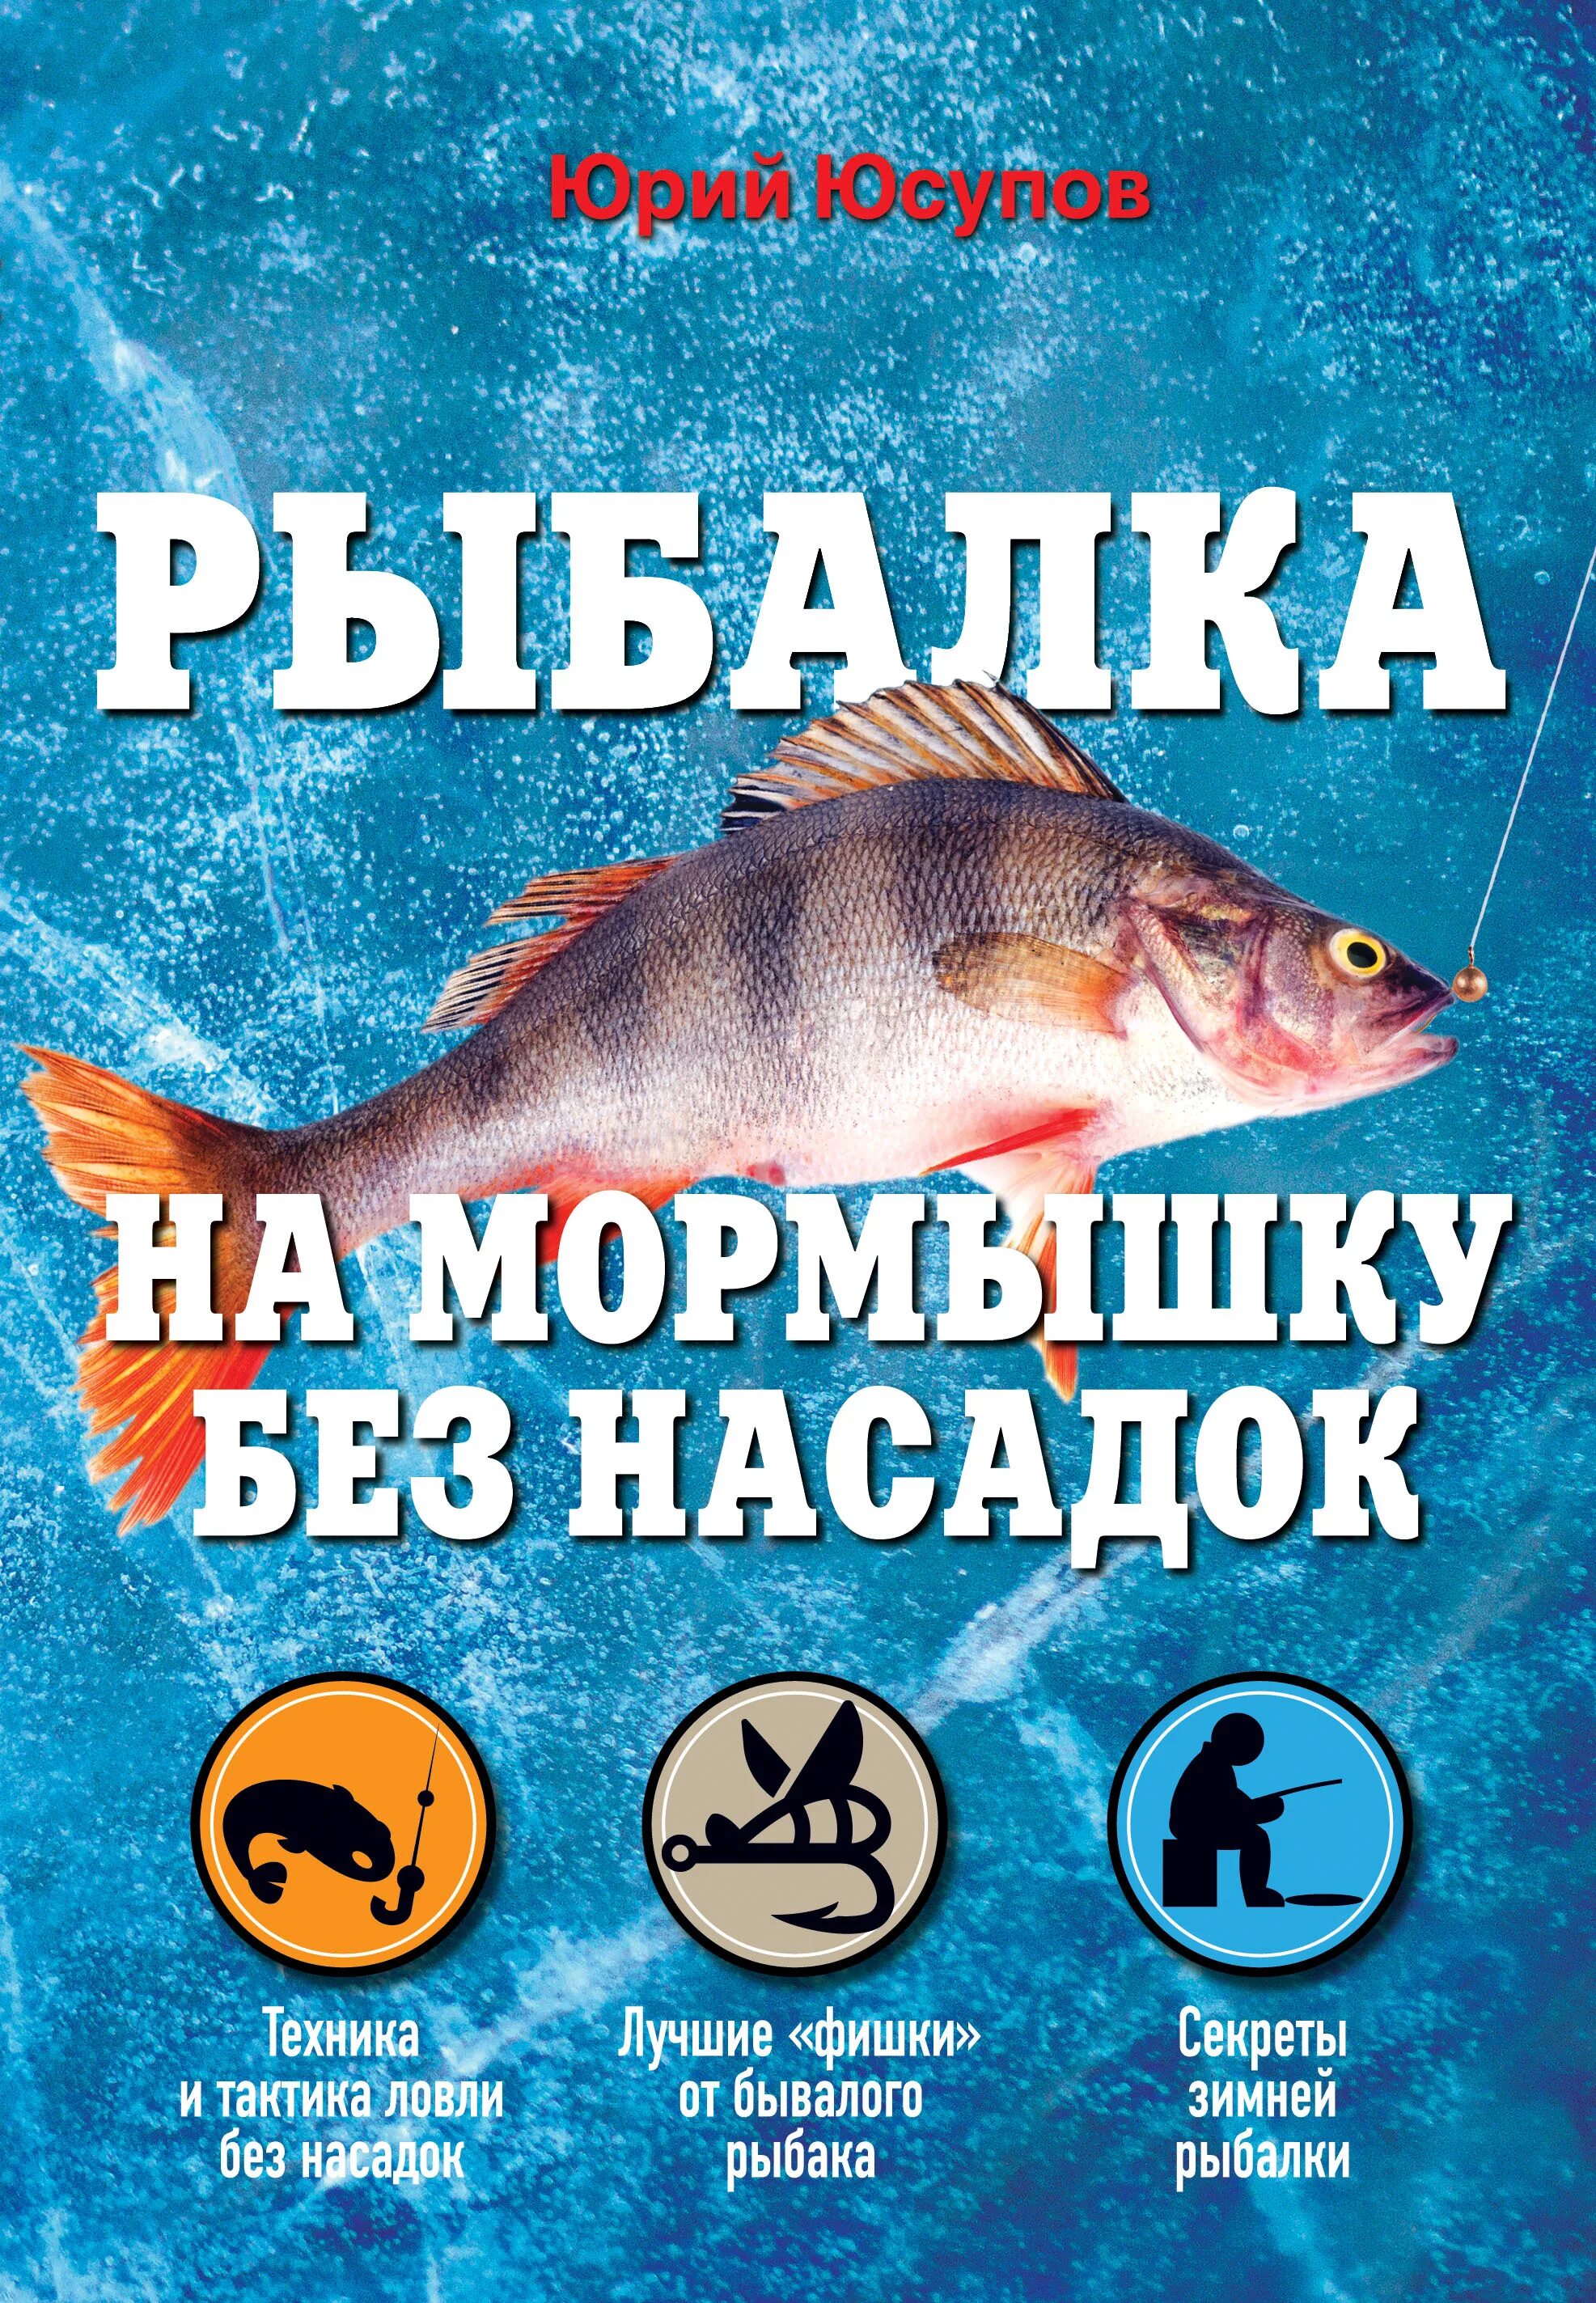 Ловля без насадки. Книги о рыбалке. Книги о рыболовстве. Книжка для рыбалки. Интересные книги про рыбалку.